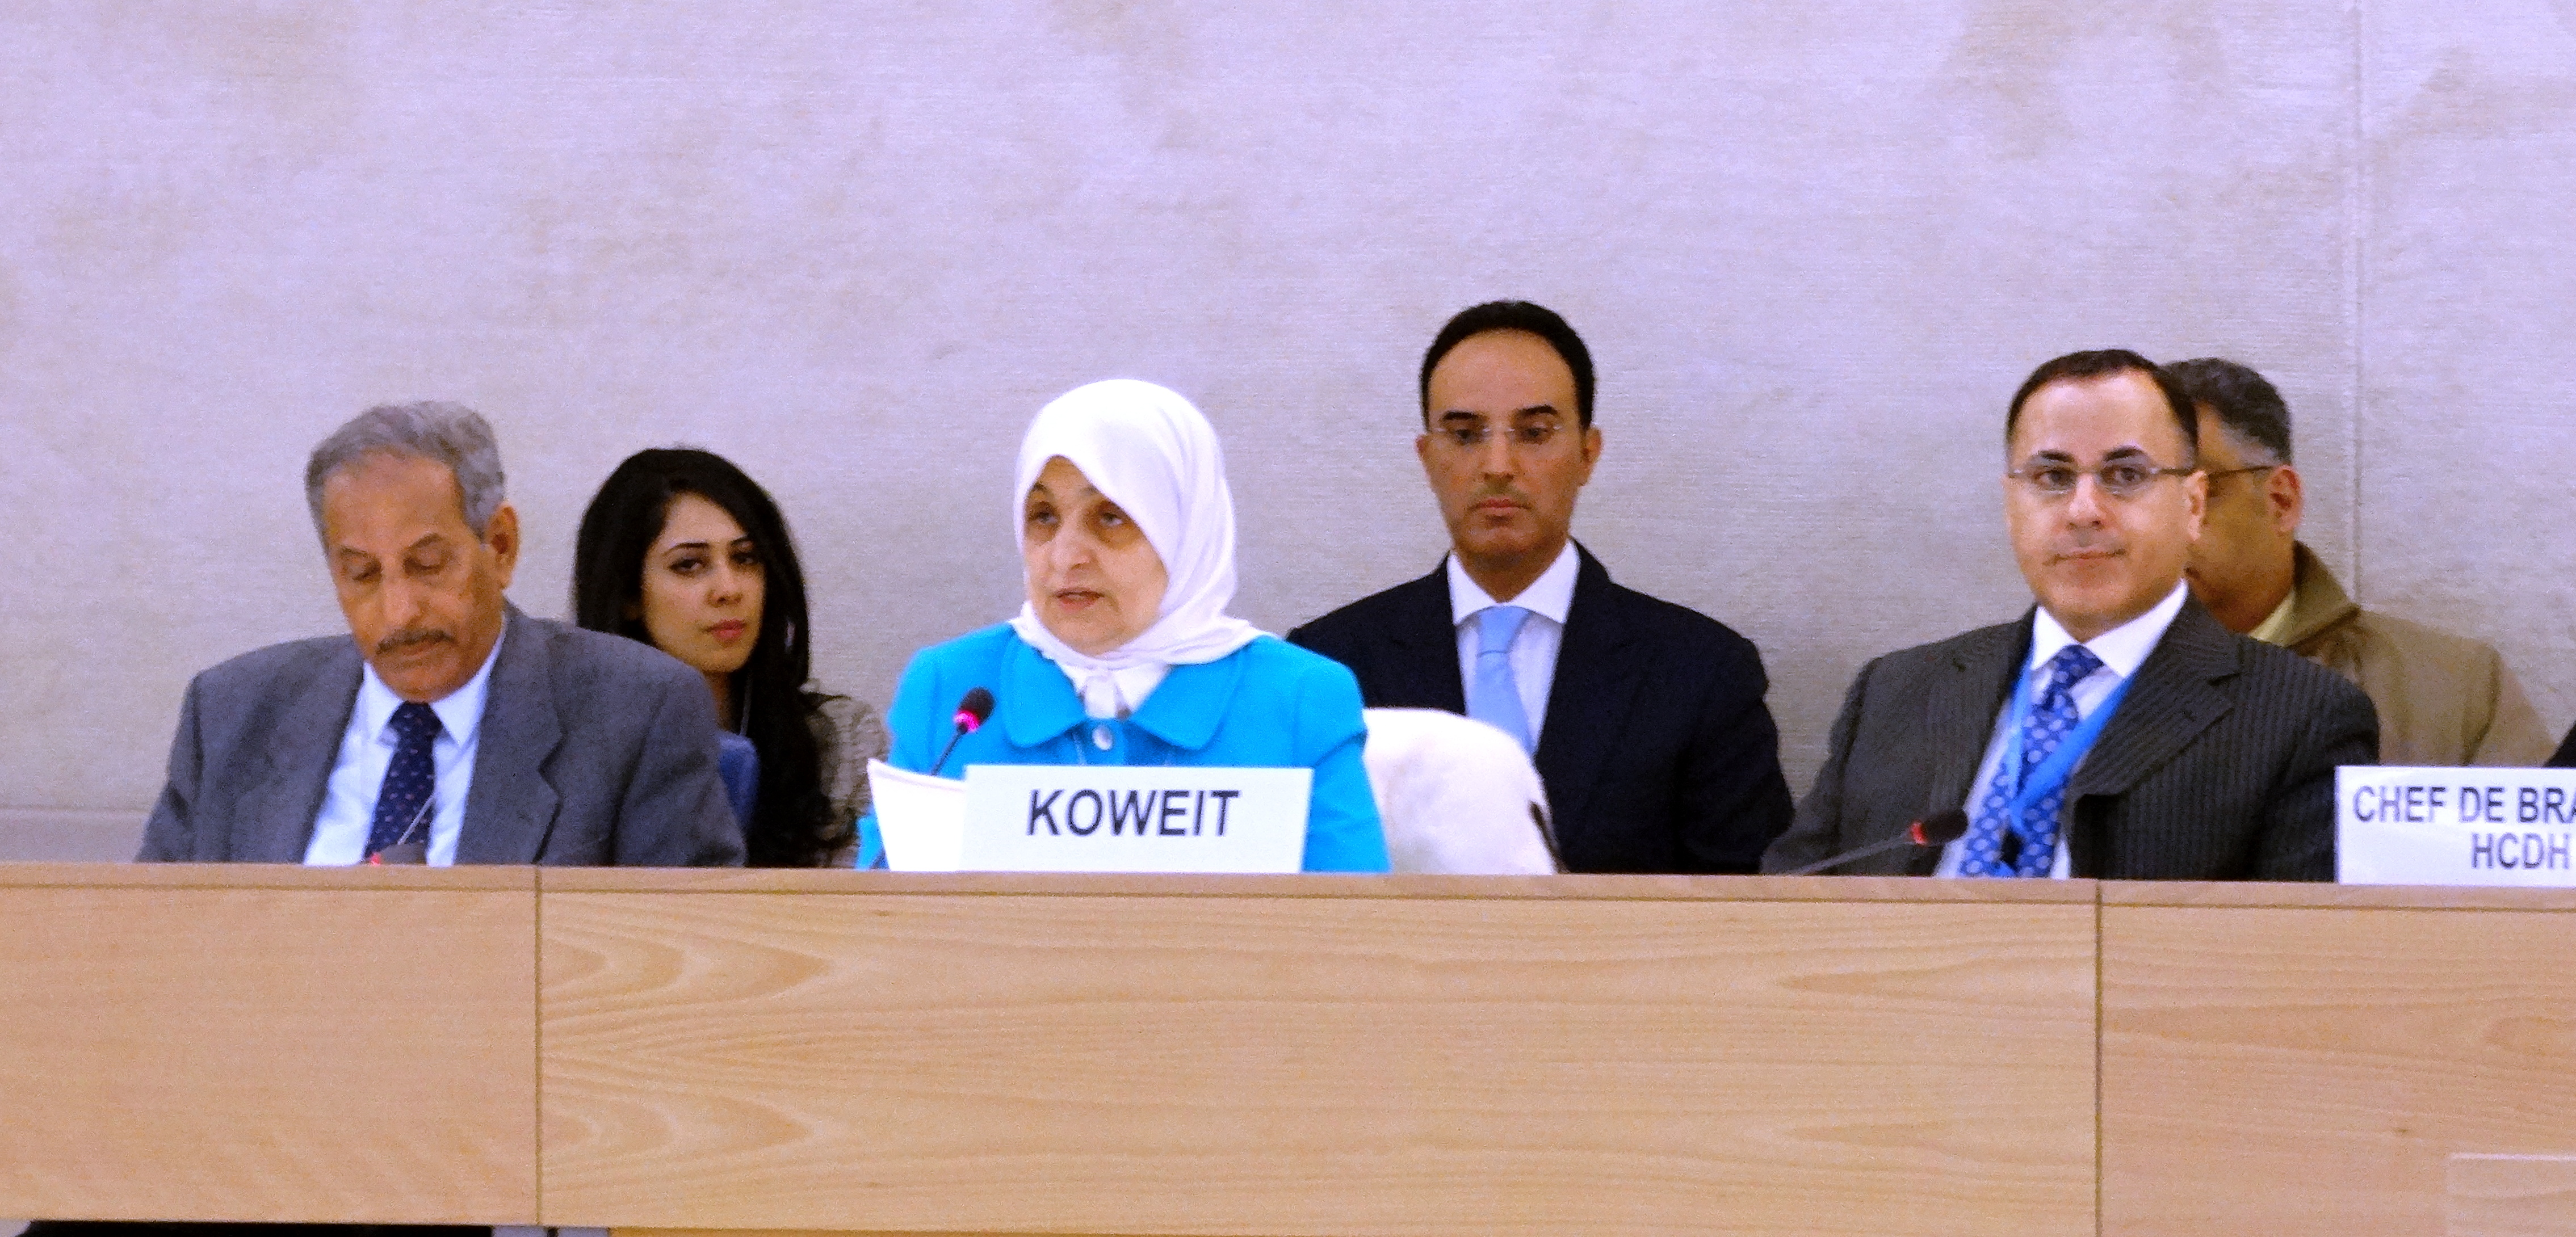 وزيرة الشؤون الاجتماعية والعمل ووزيرة الدولة لشؤون التخطيط والتنمية لدى الكويت هند صبيح الصبيح تتحدث أمام الدورة ال21 لفريق الامم المتحدة